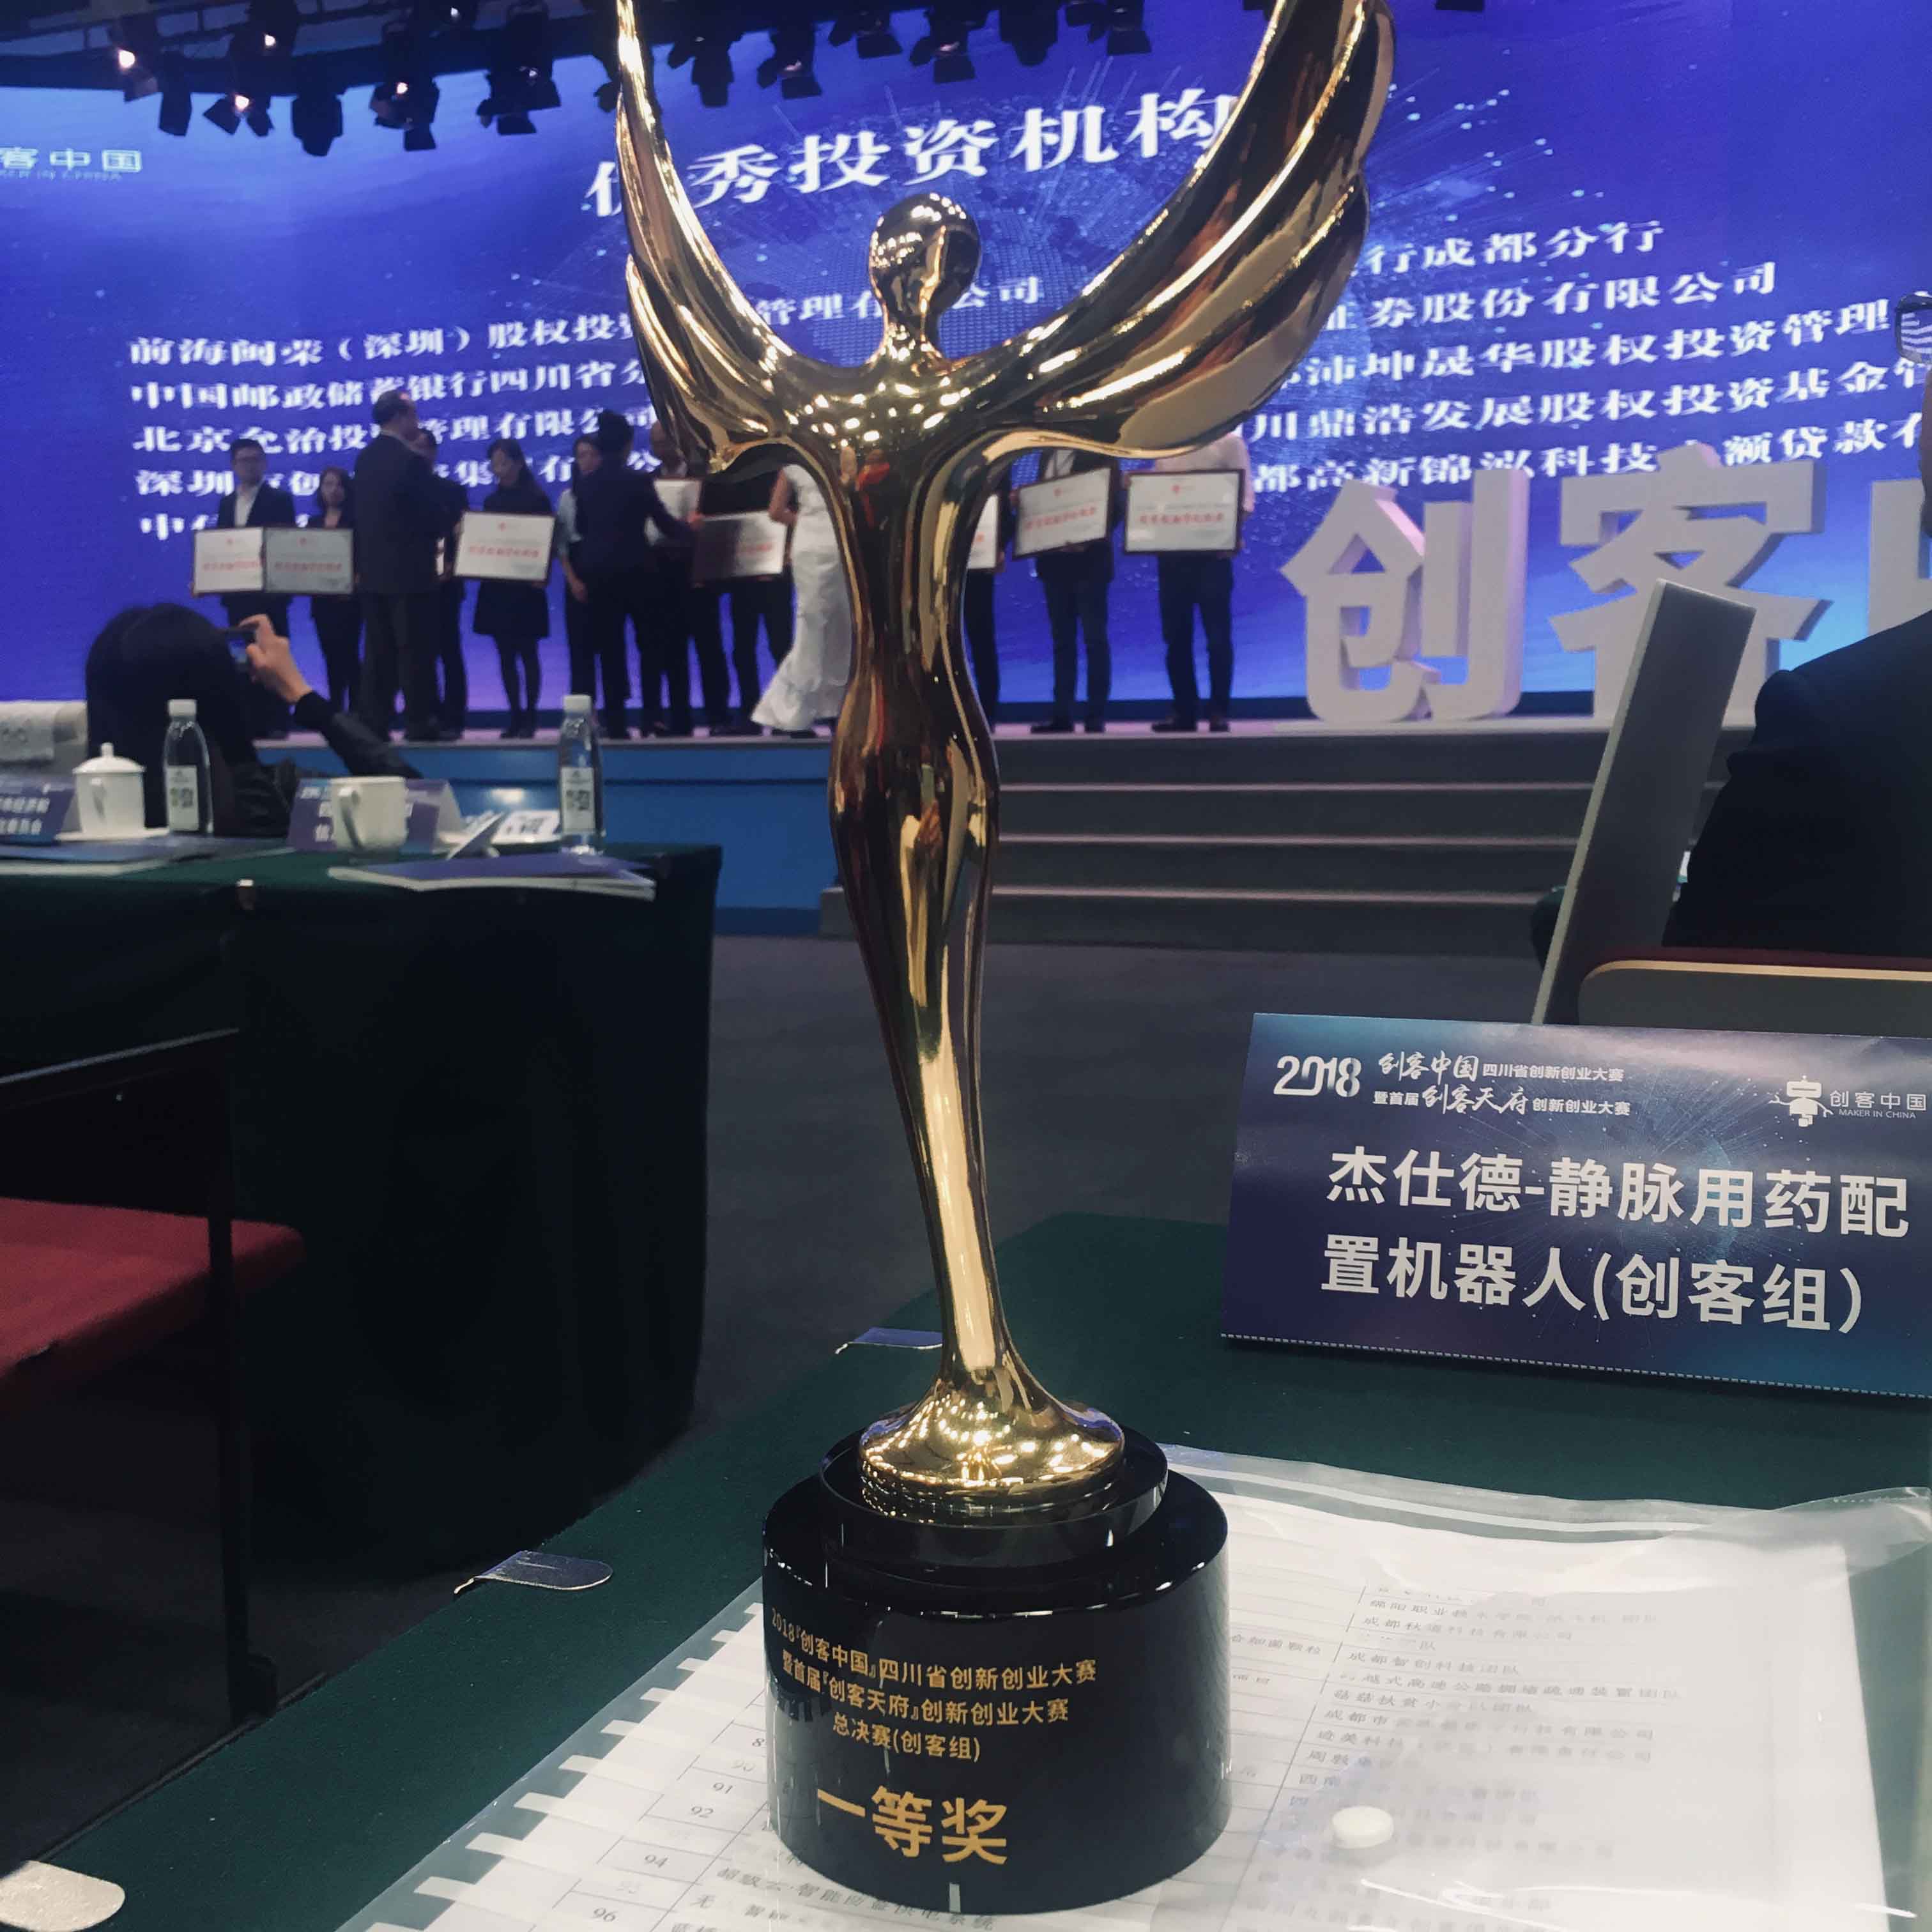 公司获得 2018“创客中国”暨首届“创客天府”创新创业大赛总决赛一等奖